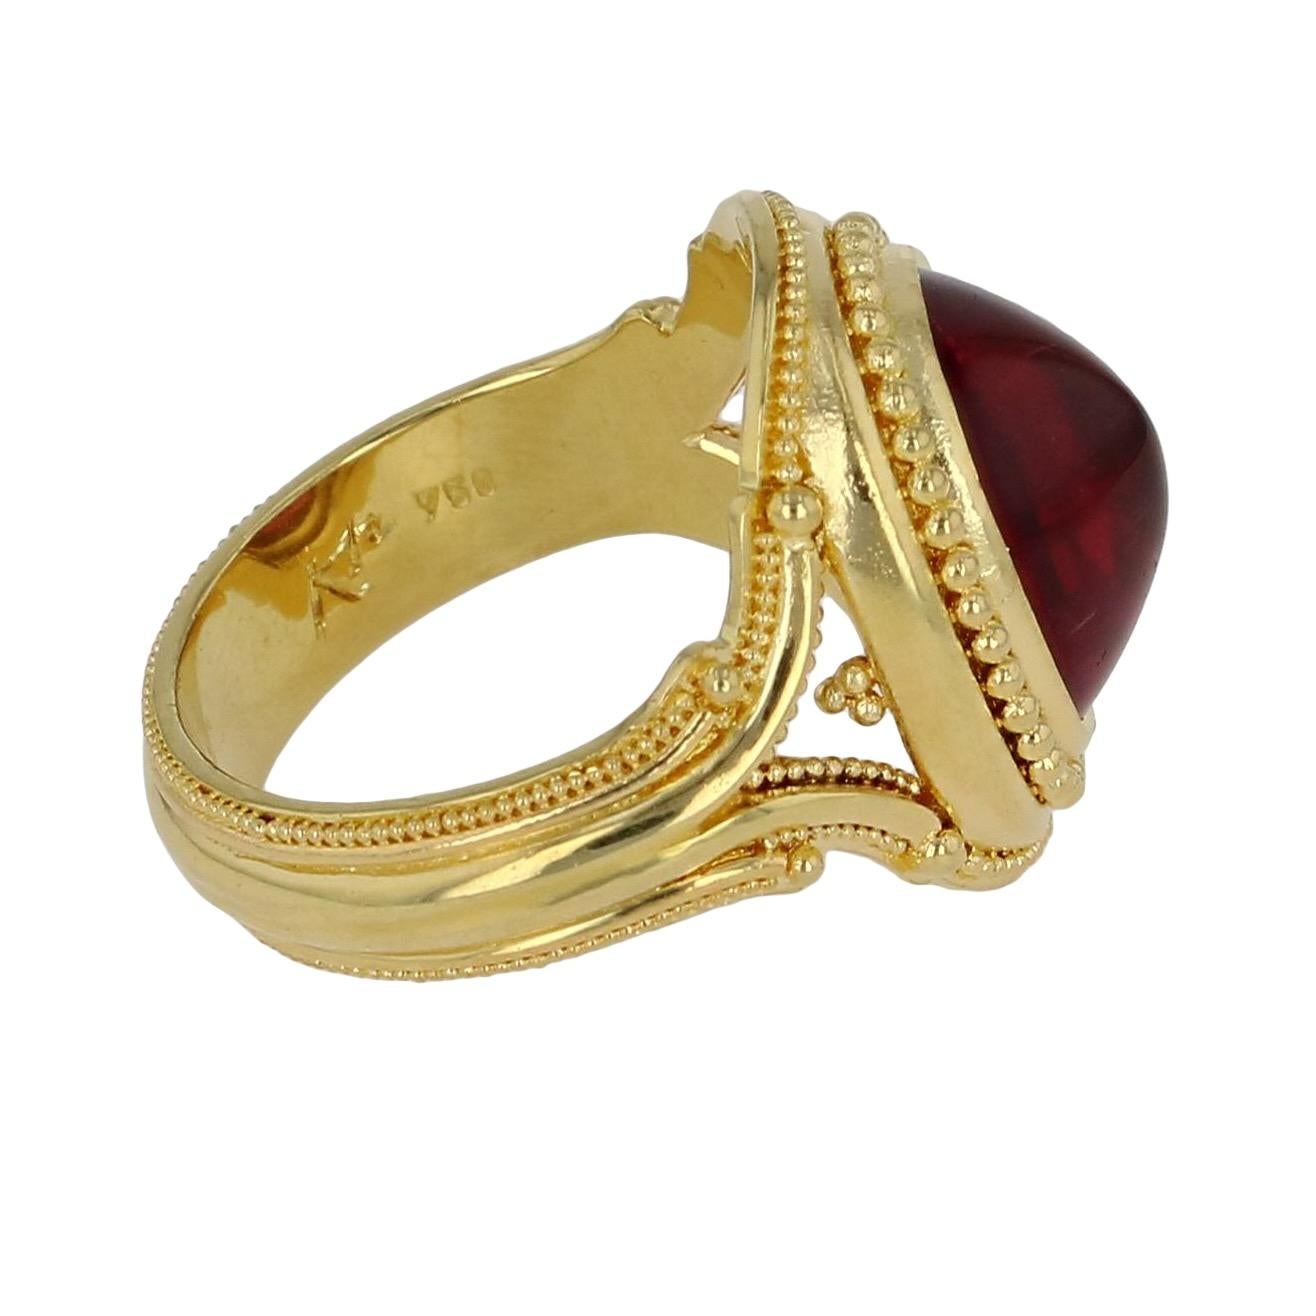 Artisan Kent Raible 18 Karat Gold Rubellite Tourmaline Cocktail Ring with Granulation For Sale